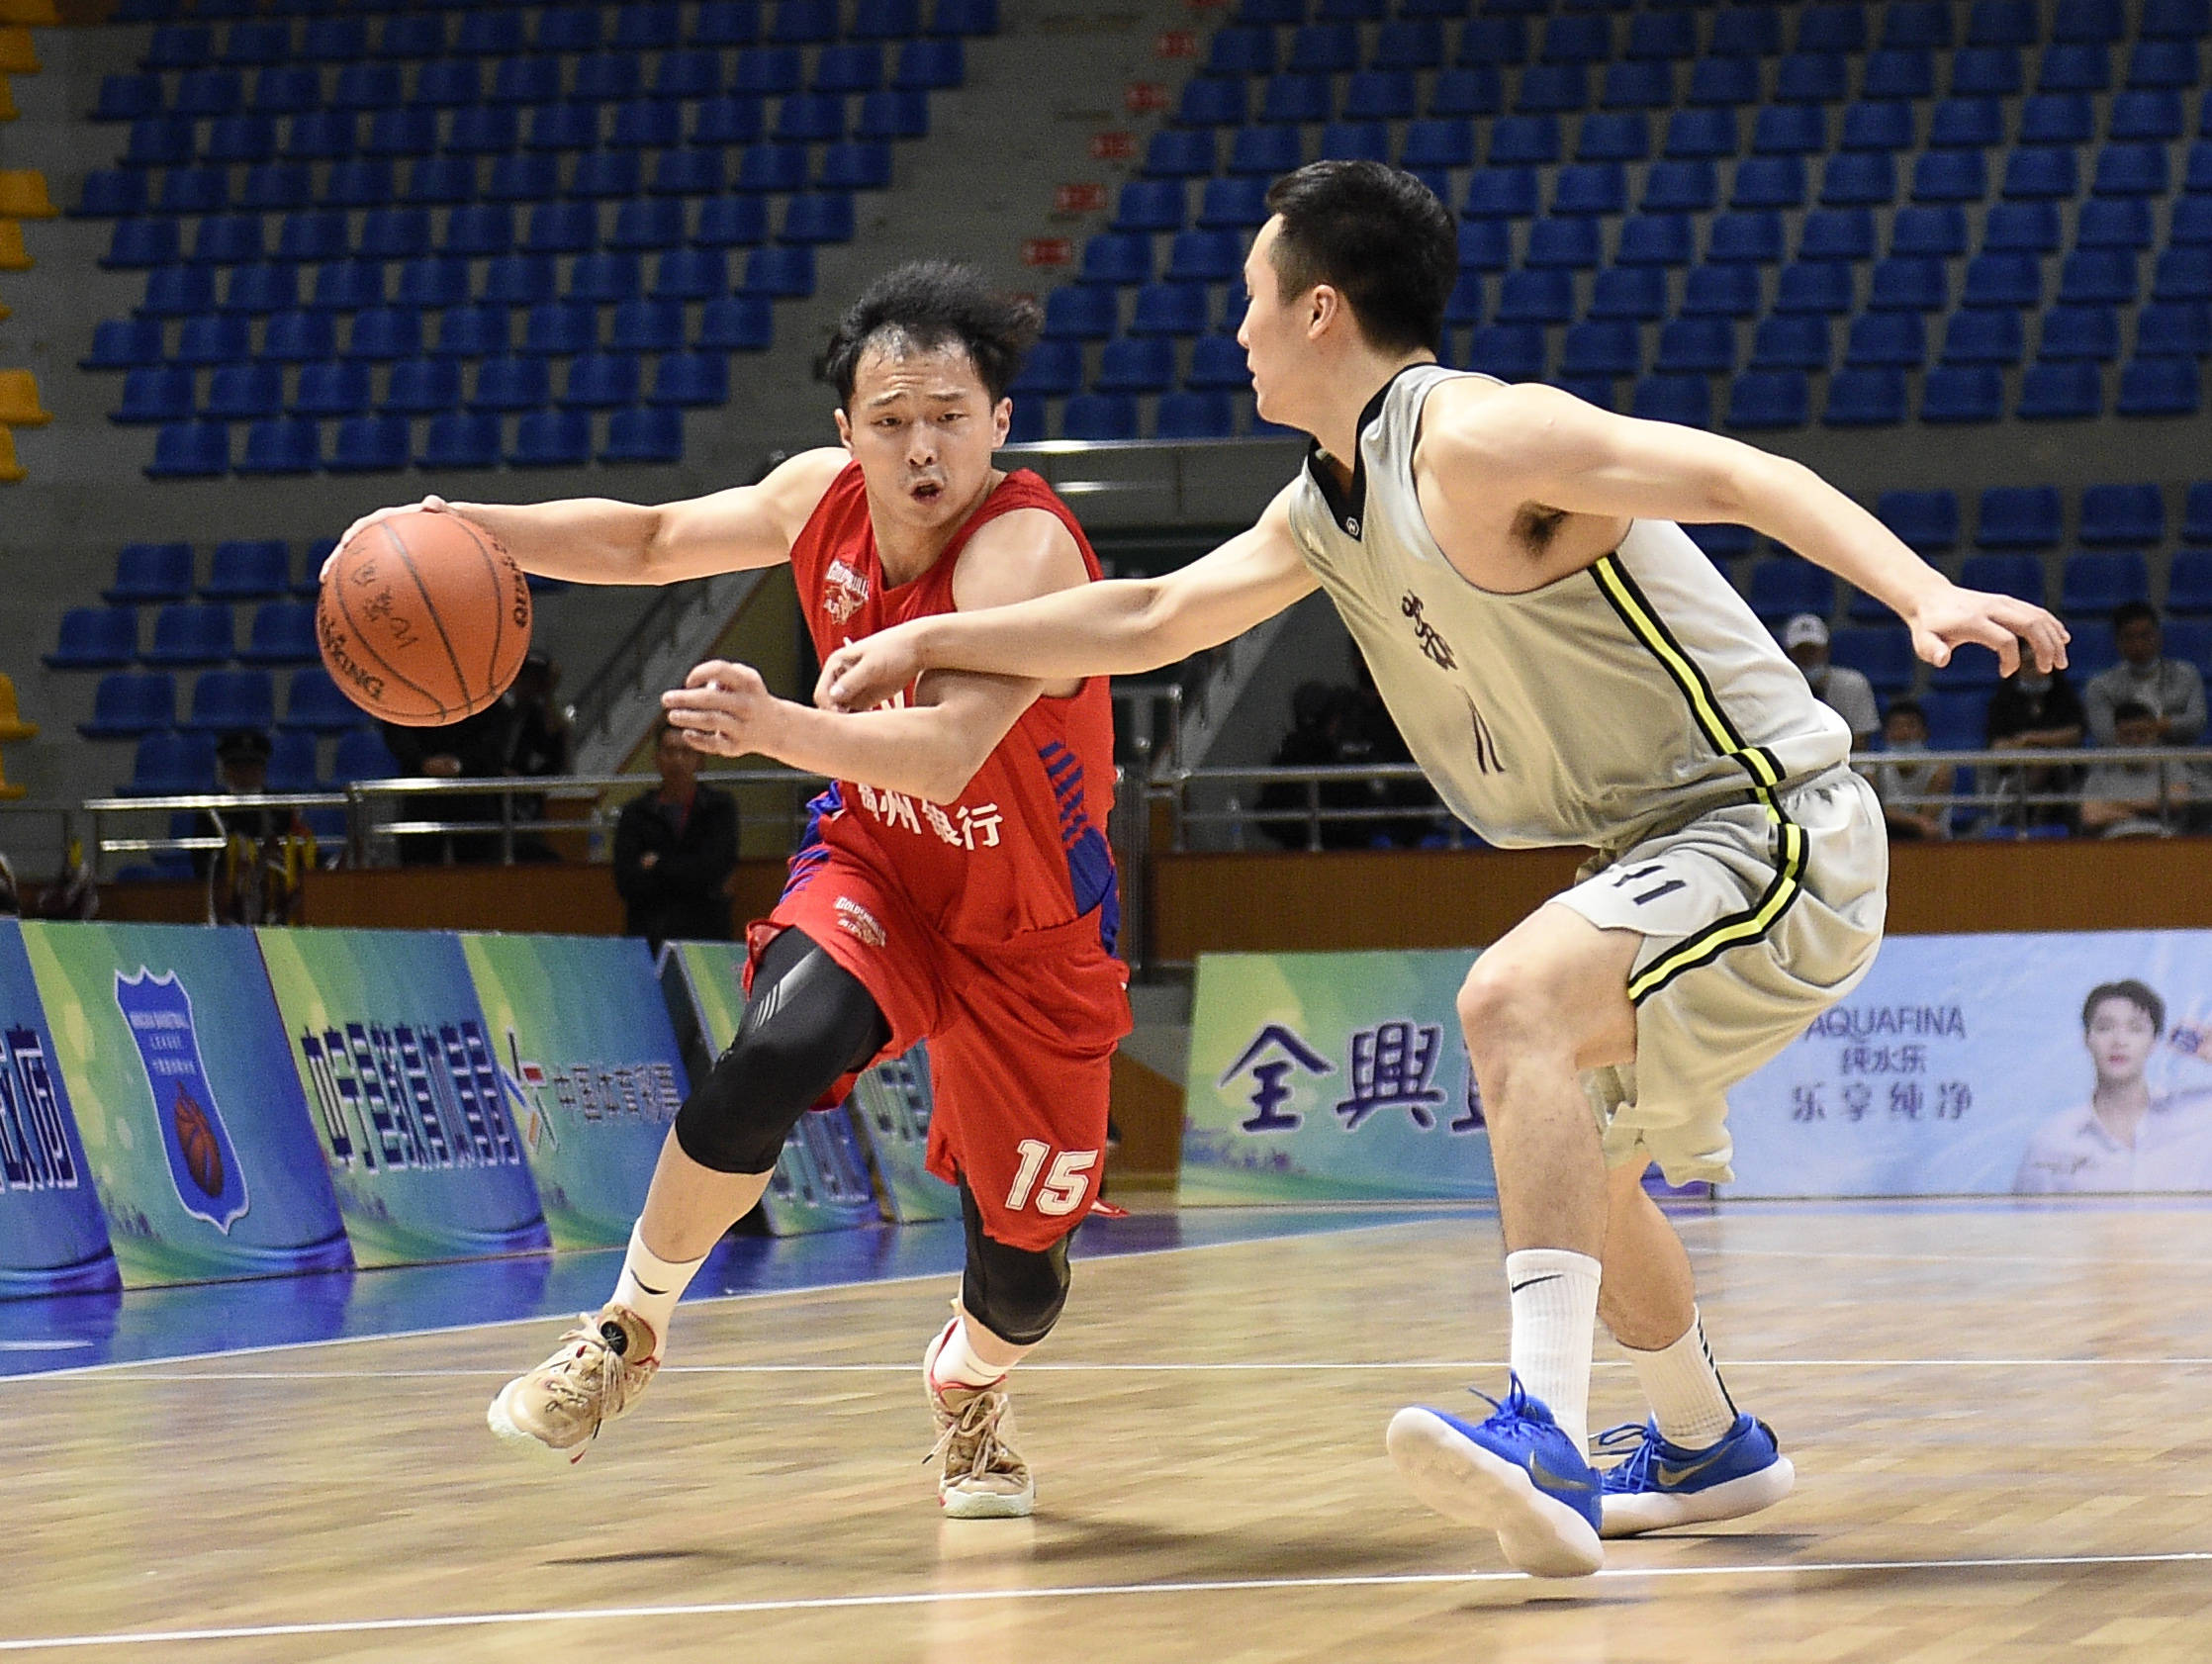 全运会—男子u22篮球资格赛:浙江胜江苏